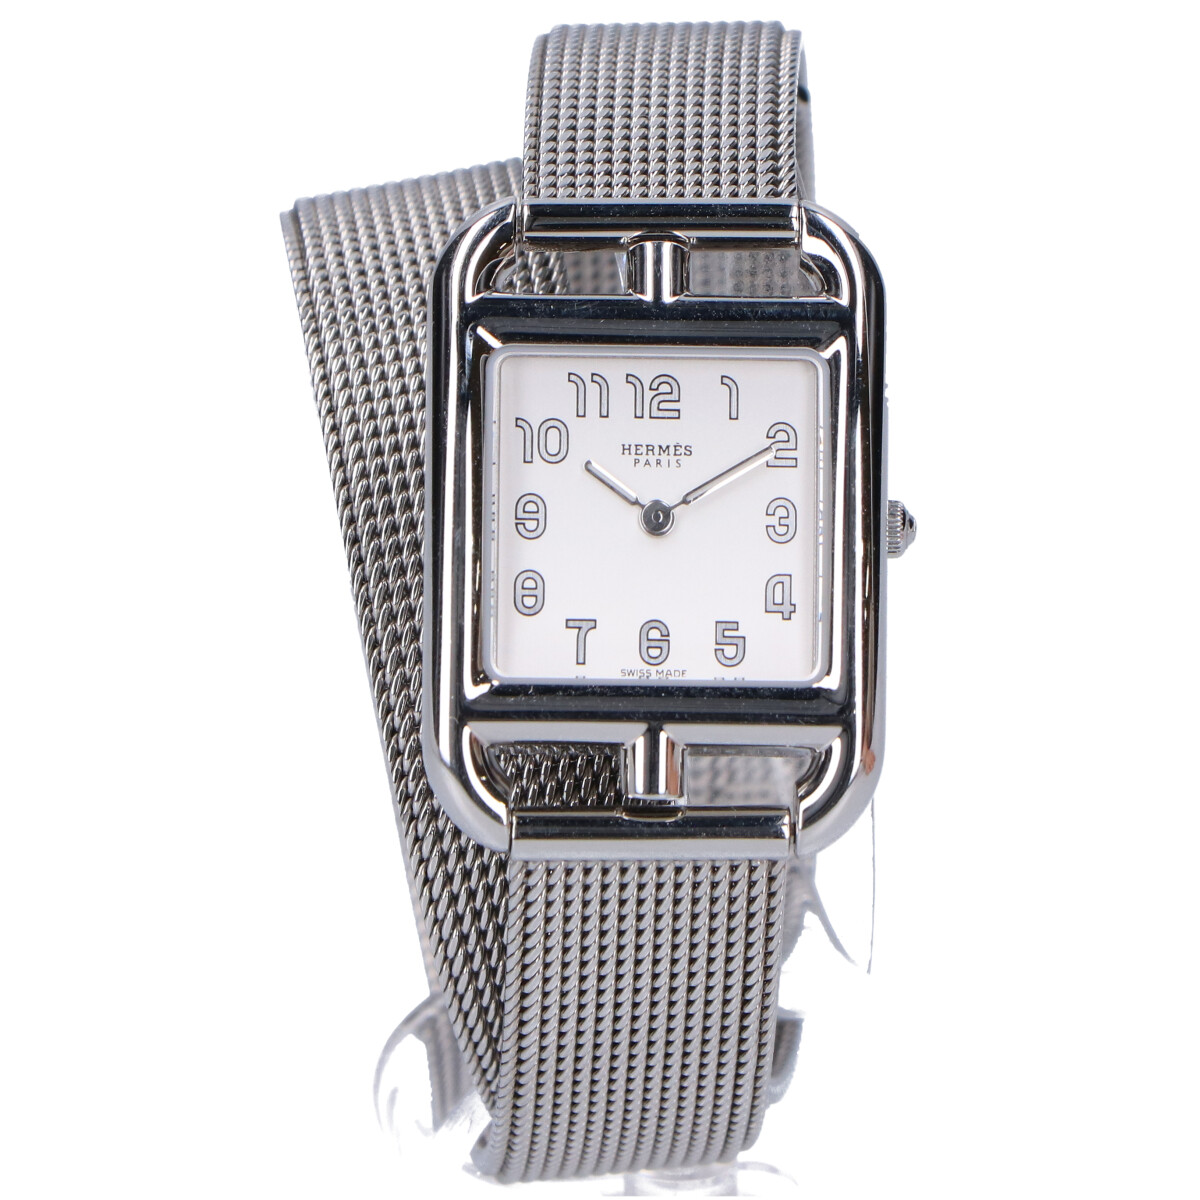 エルメスのS/S cc1.210a ケープゴッド ミラネーゼメシュベルト 腕時計の買取実績です。